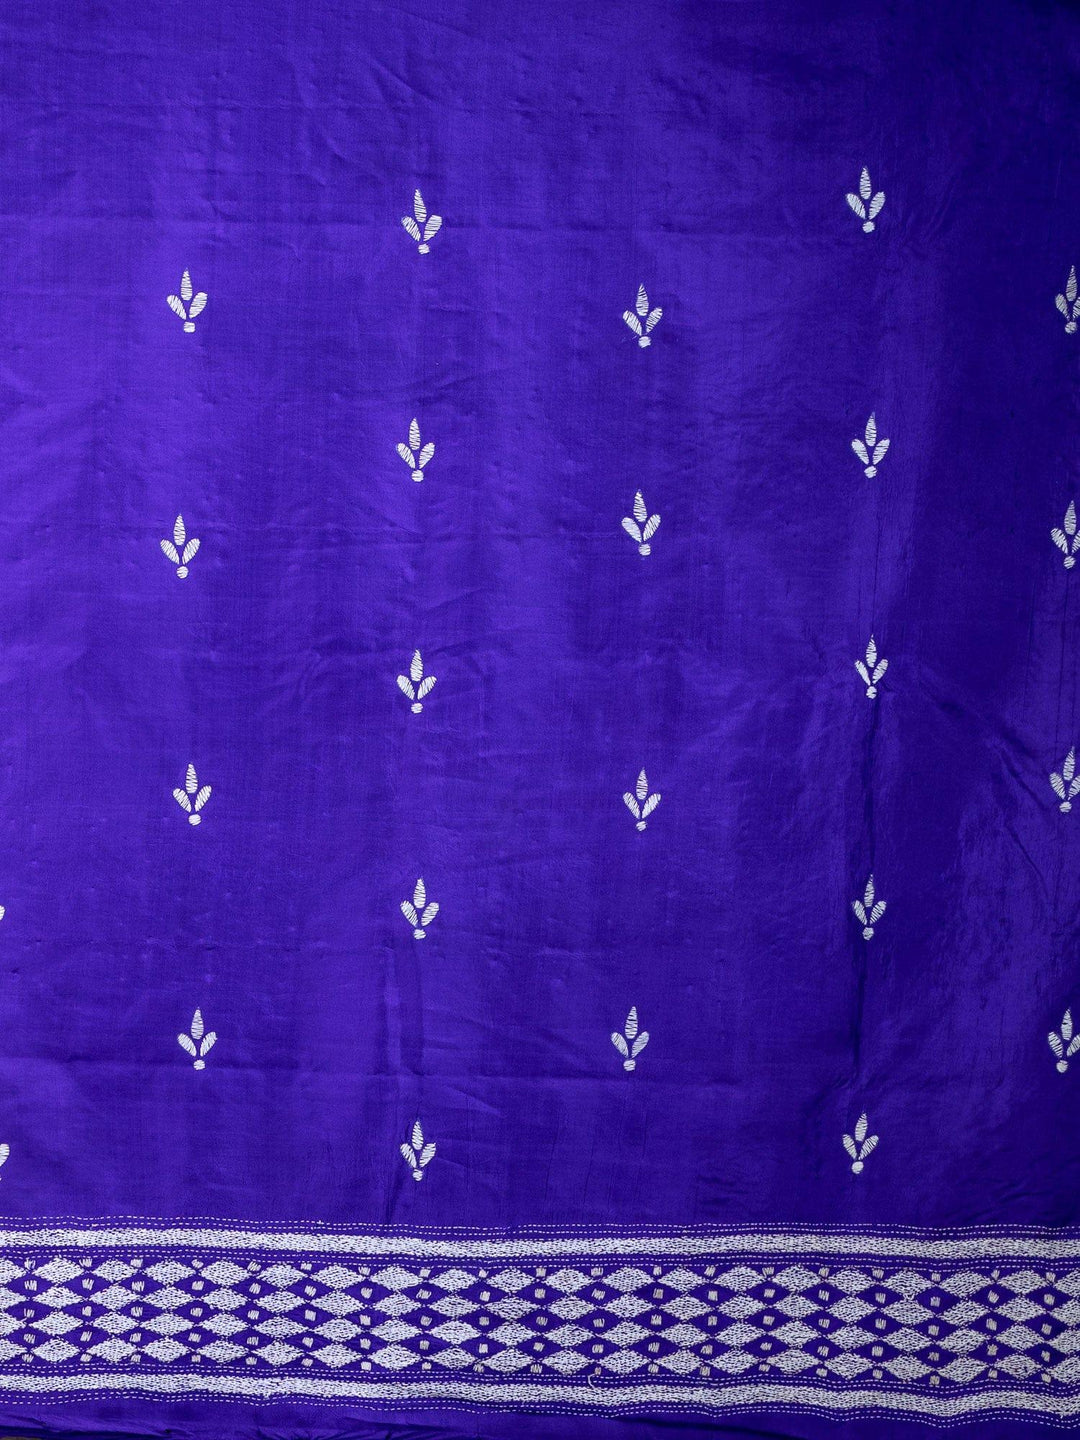 Fabulous Spanish Violet Kantha Stitch Bangalore Silk Saree - WeaversIndia